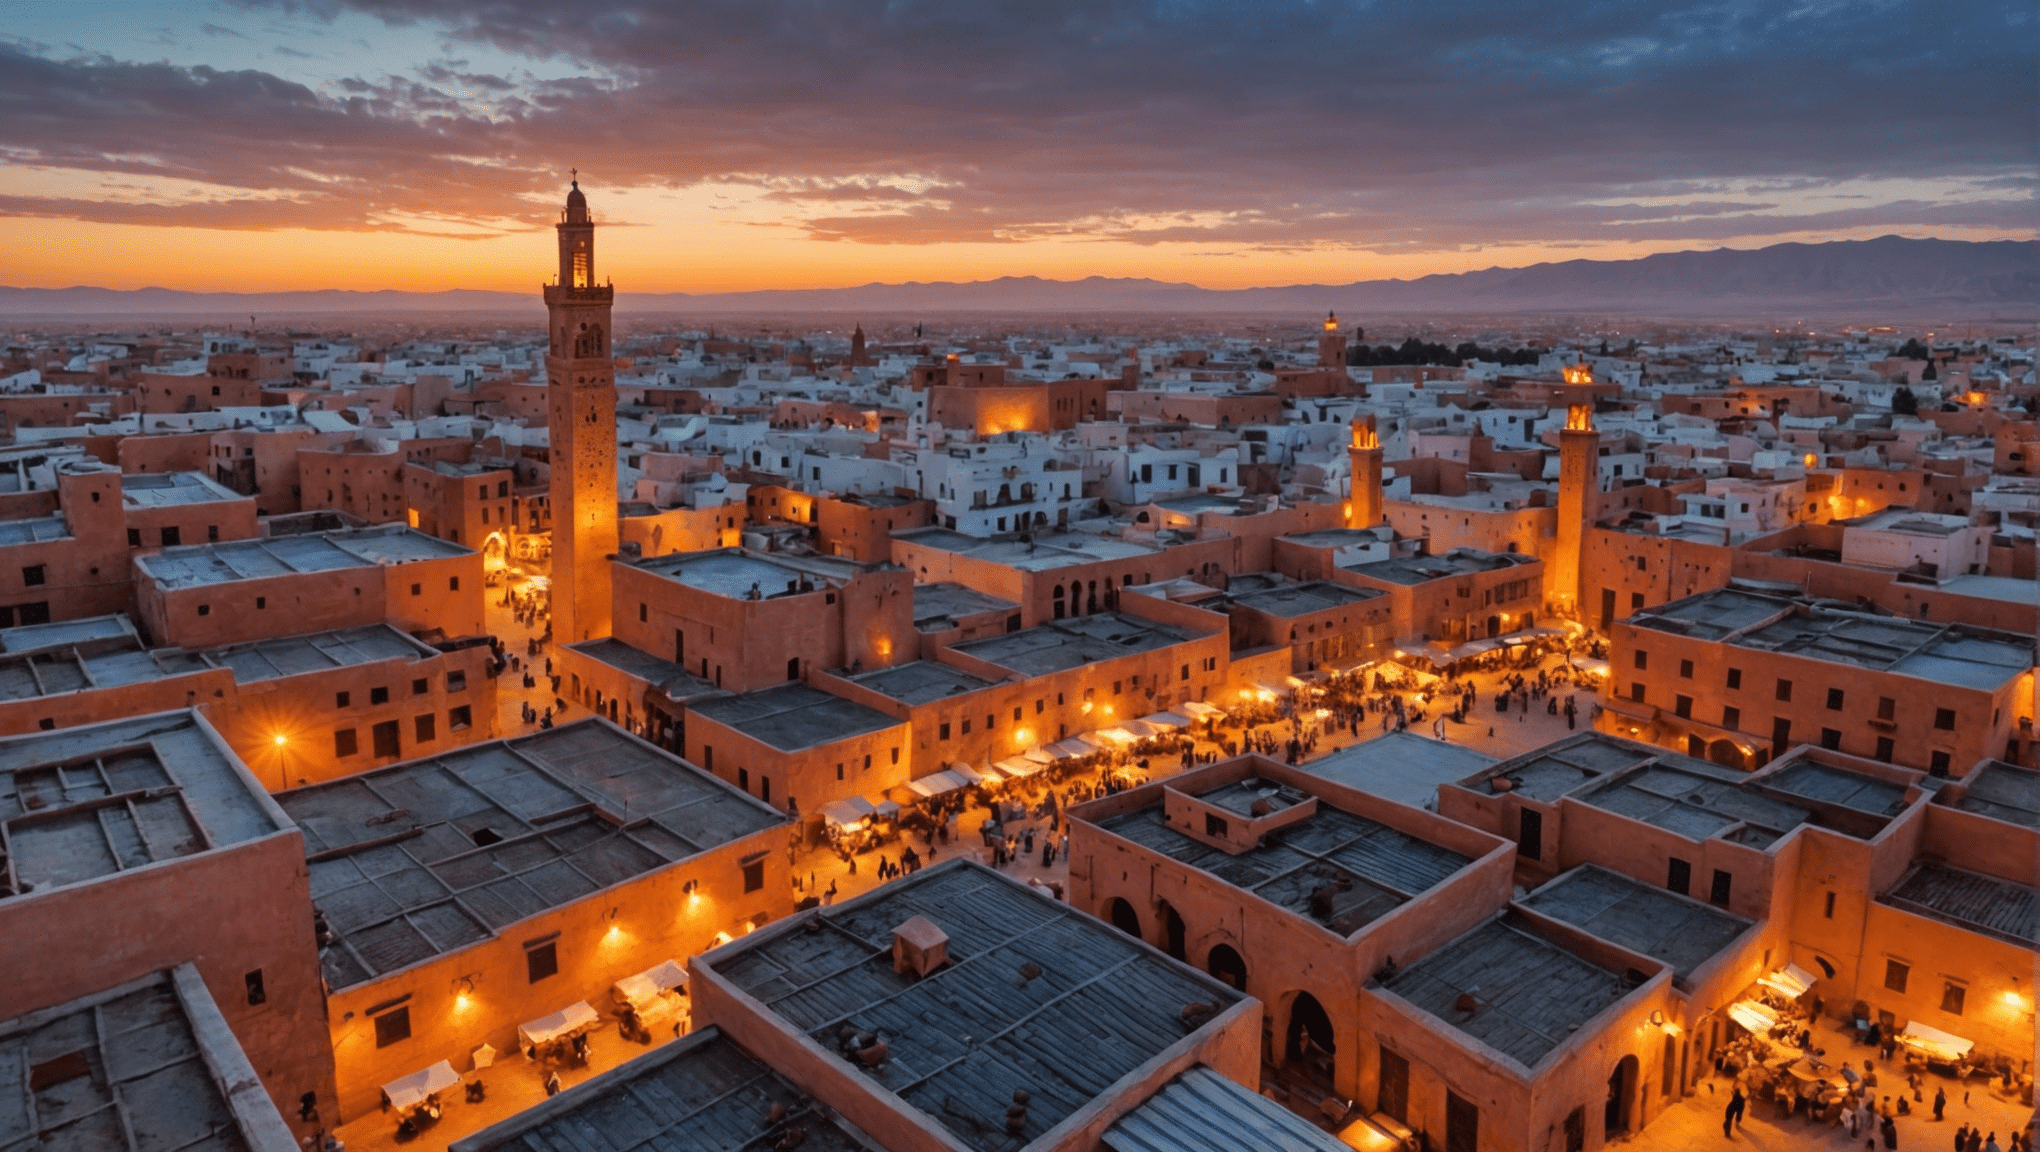 Découvrez les conditions météo au Maroc en janvier et planifiez votre voyage en toute sérénité. renseignez-vous sur la température, les précipitations et bien plus encore pour profiter au maximum de votre visite.